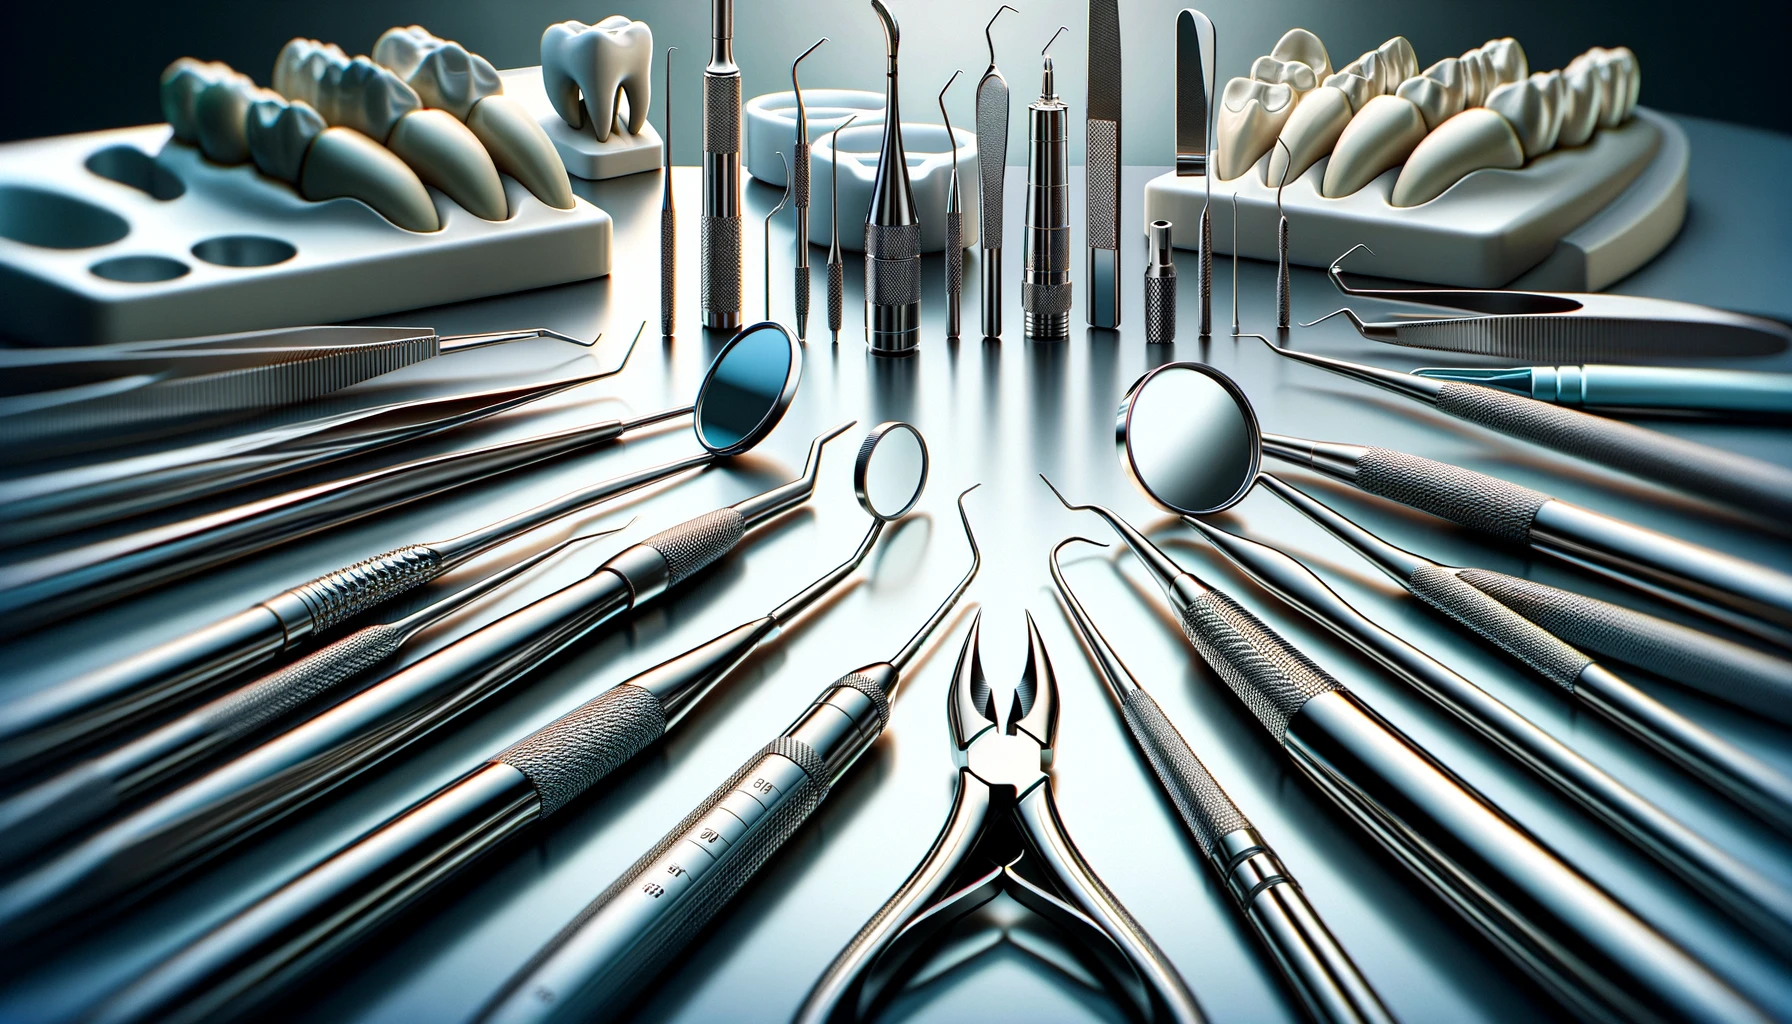 اختيار أدوات طب الأسنان عالية الجودة